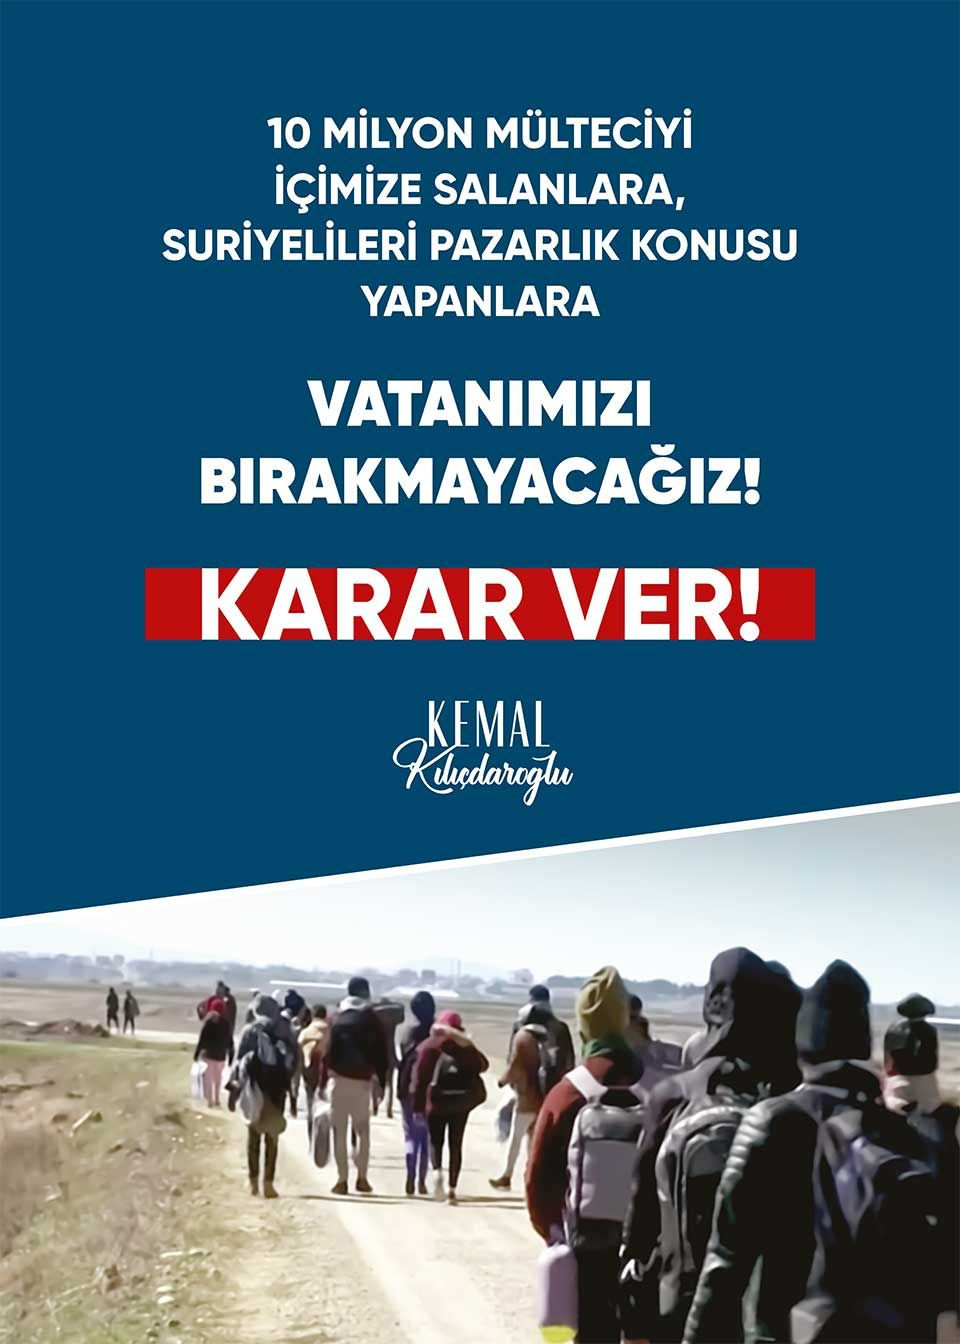 Kılıçdaroğlu'nun seçim sloganı 'Karar ver': 9 başlıkta afiş hazırlandı - Sayfa 3